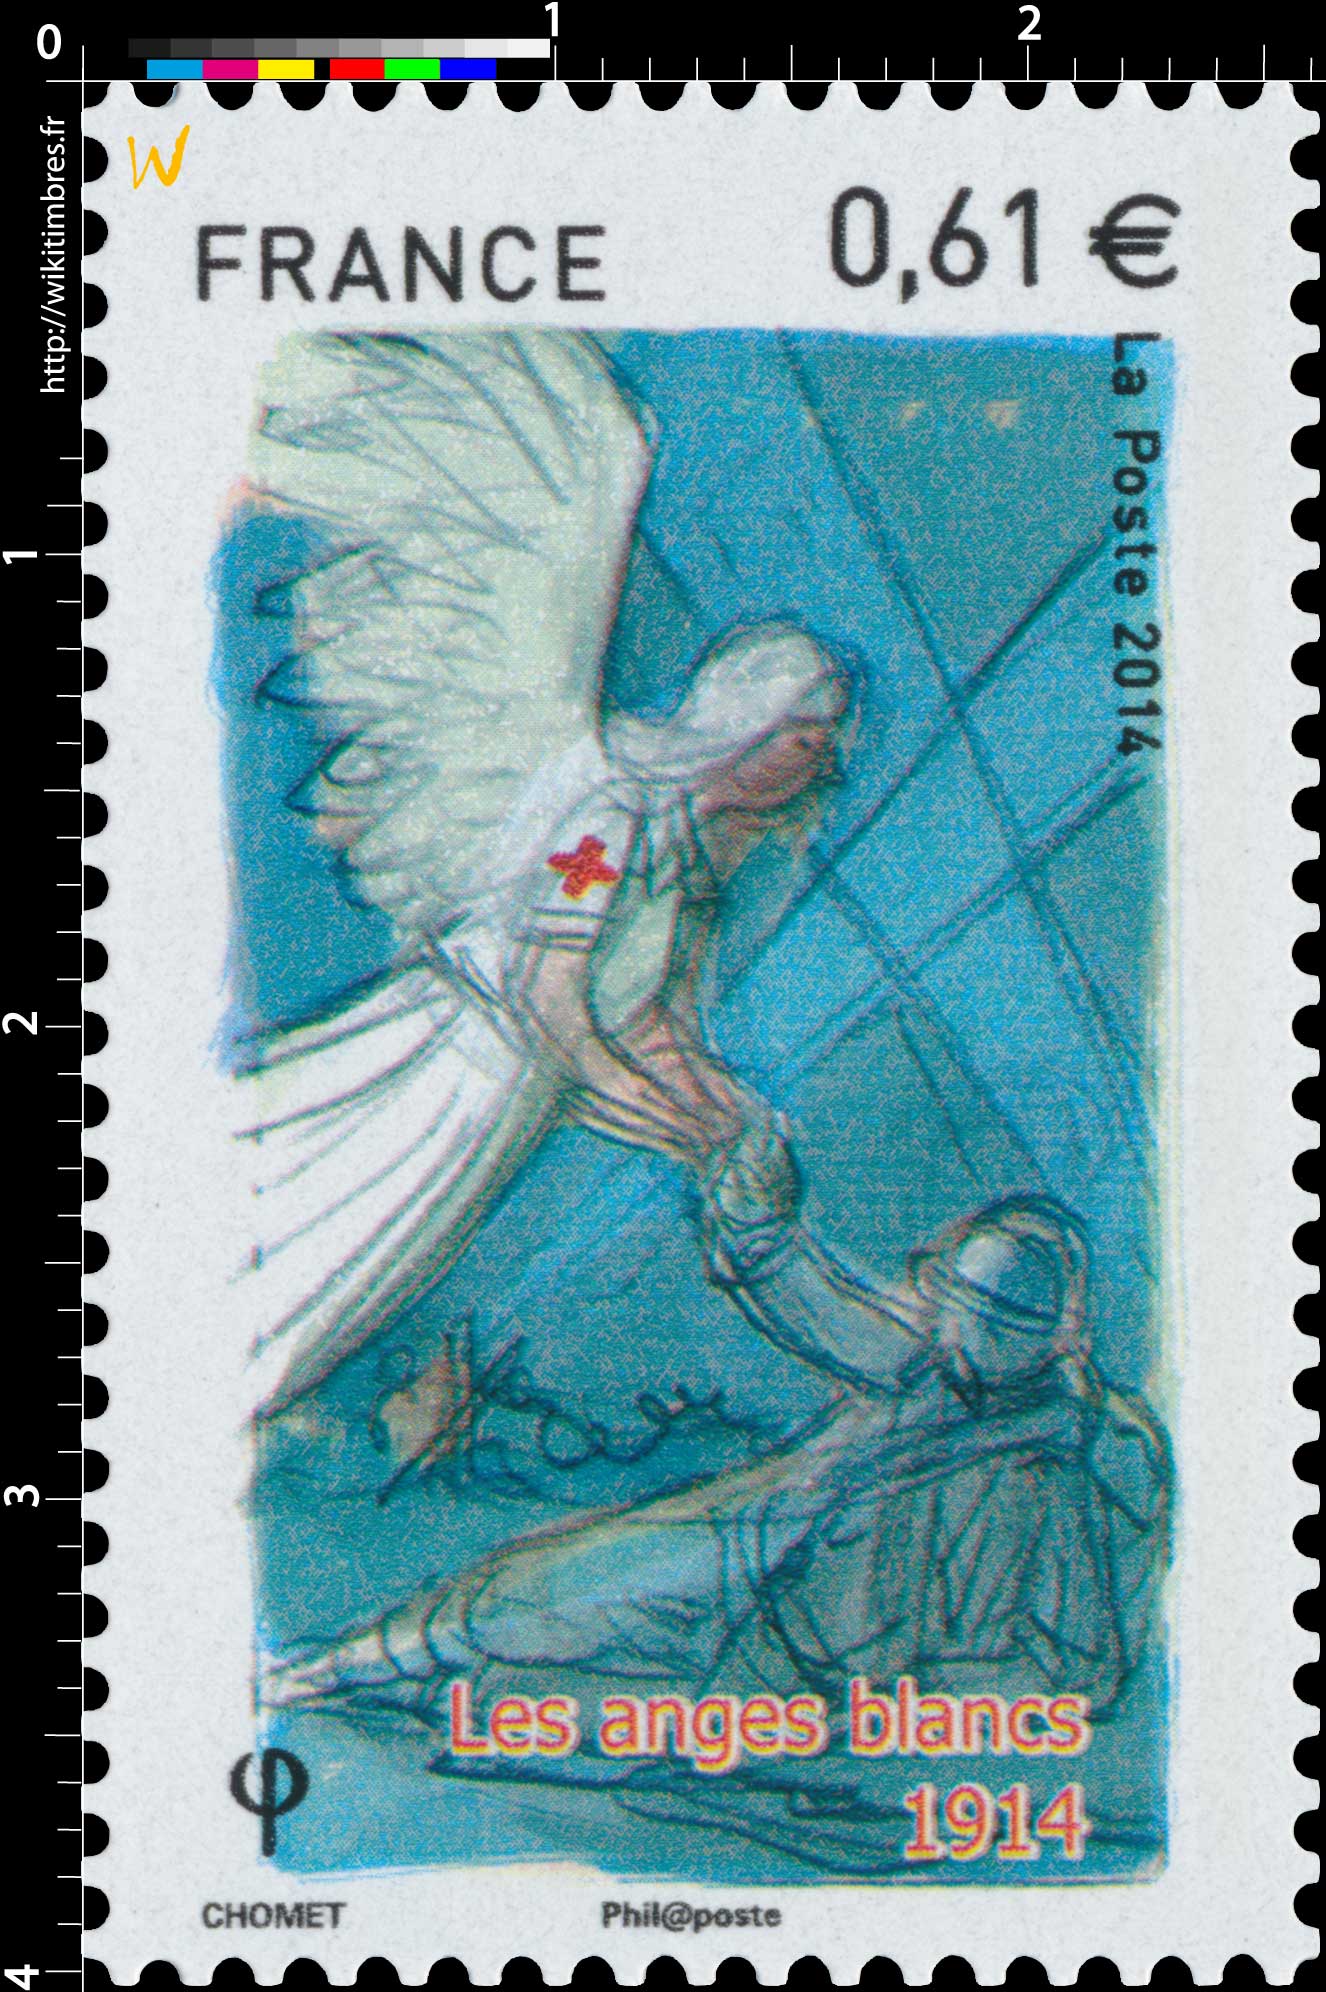 2014 Les anges blancs 1914